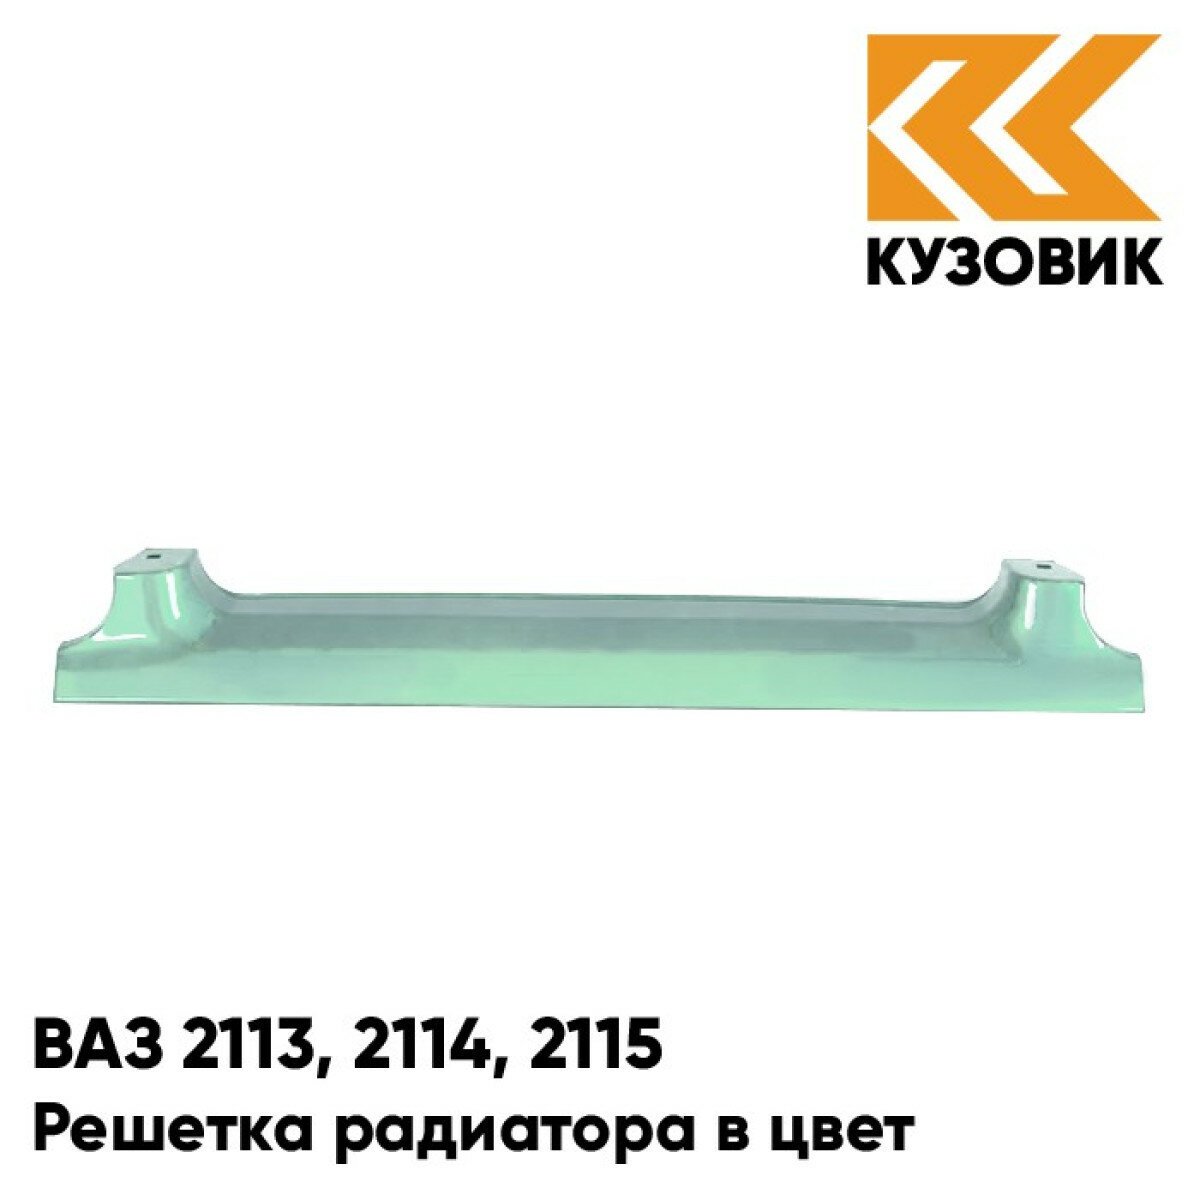 Решетка радиатора в цвет ВАЗ 2113, 2114, 2115 421 - Афалина - Зеленый